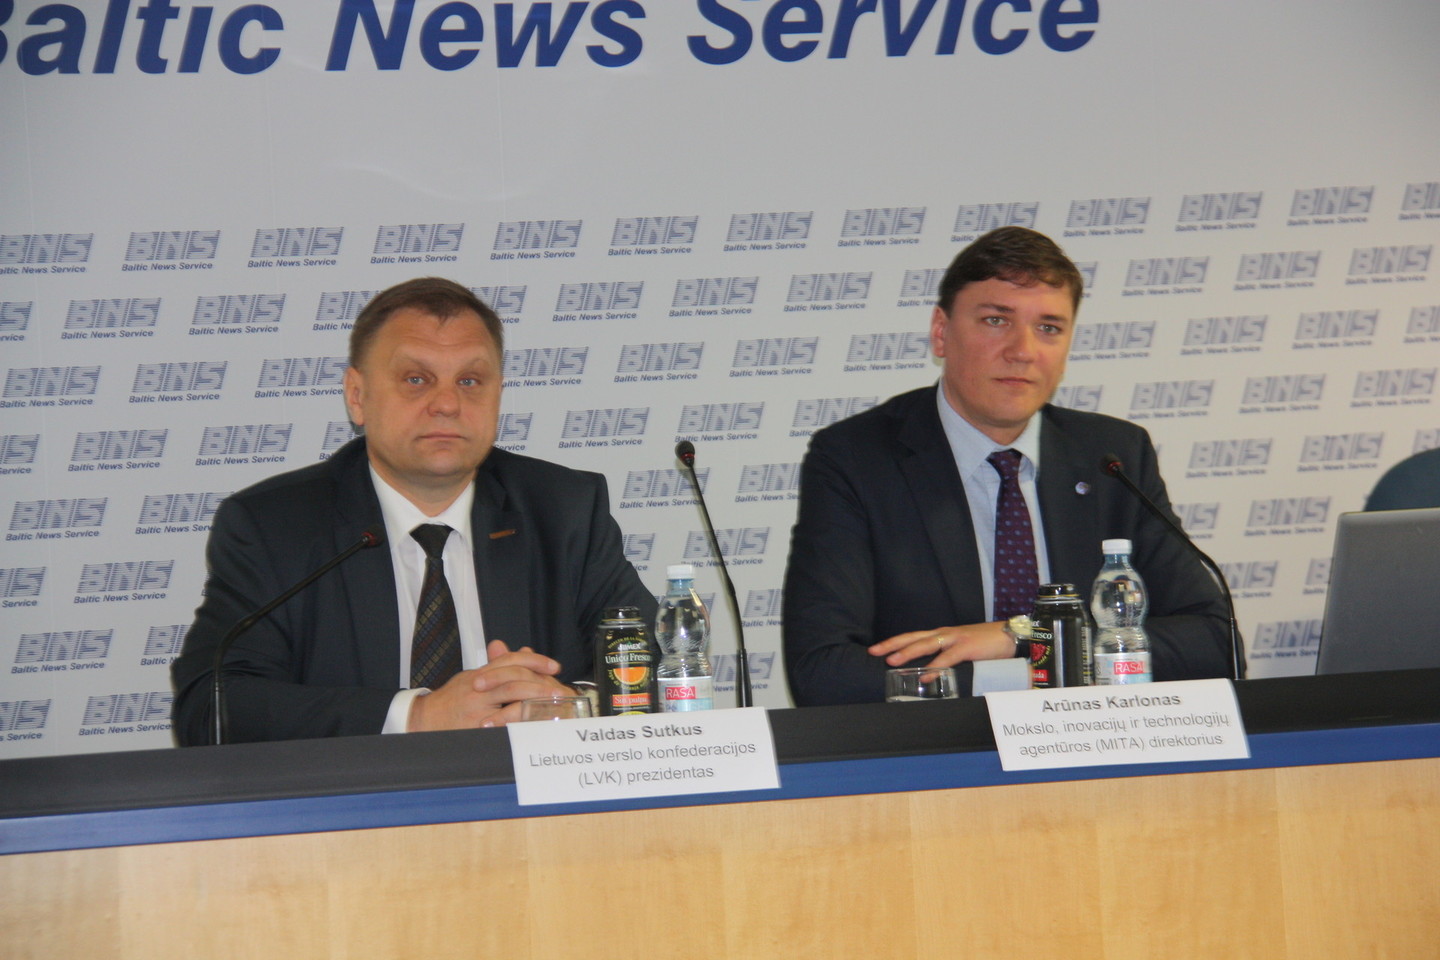 MITA direktorius Arūnas Karlonas (dešinėje) ir Lietuvos verslo konfederacijos (LVK) prezidentas Valdas Sutkus.